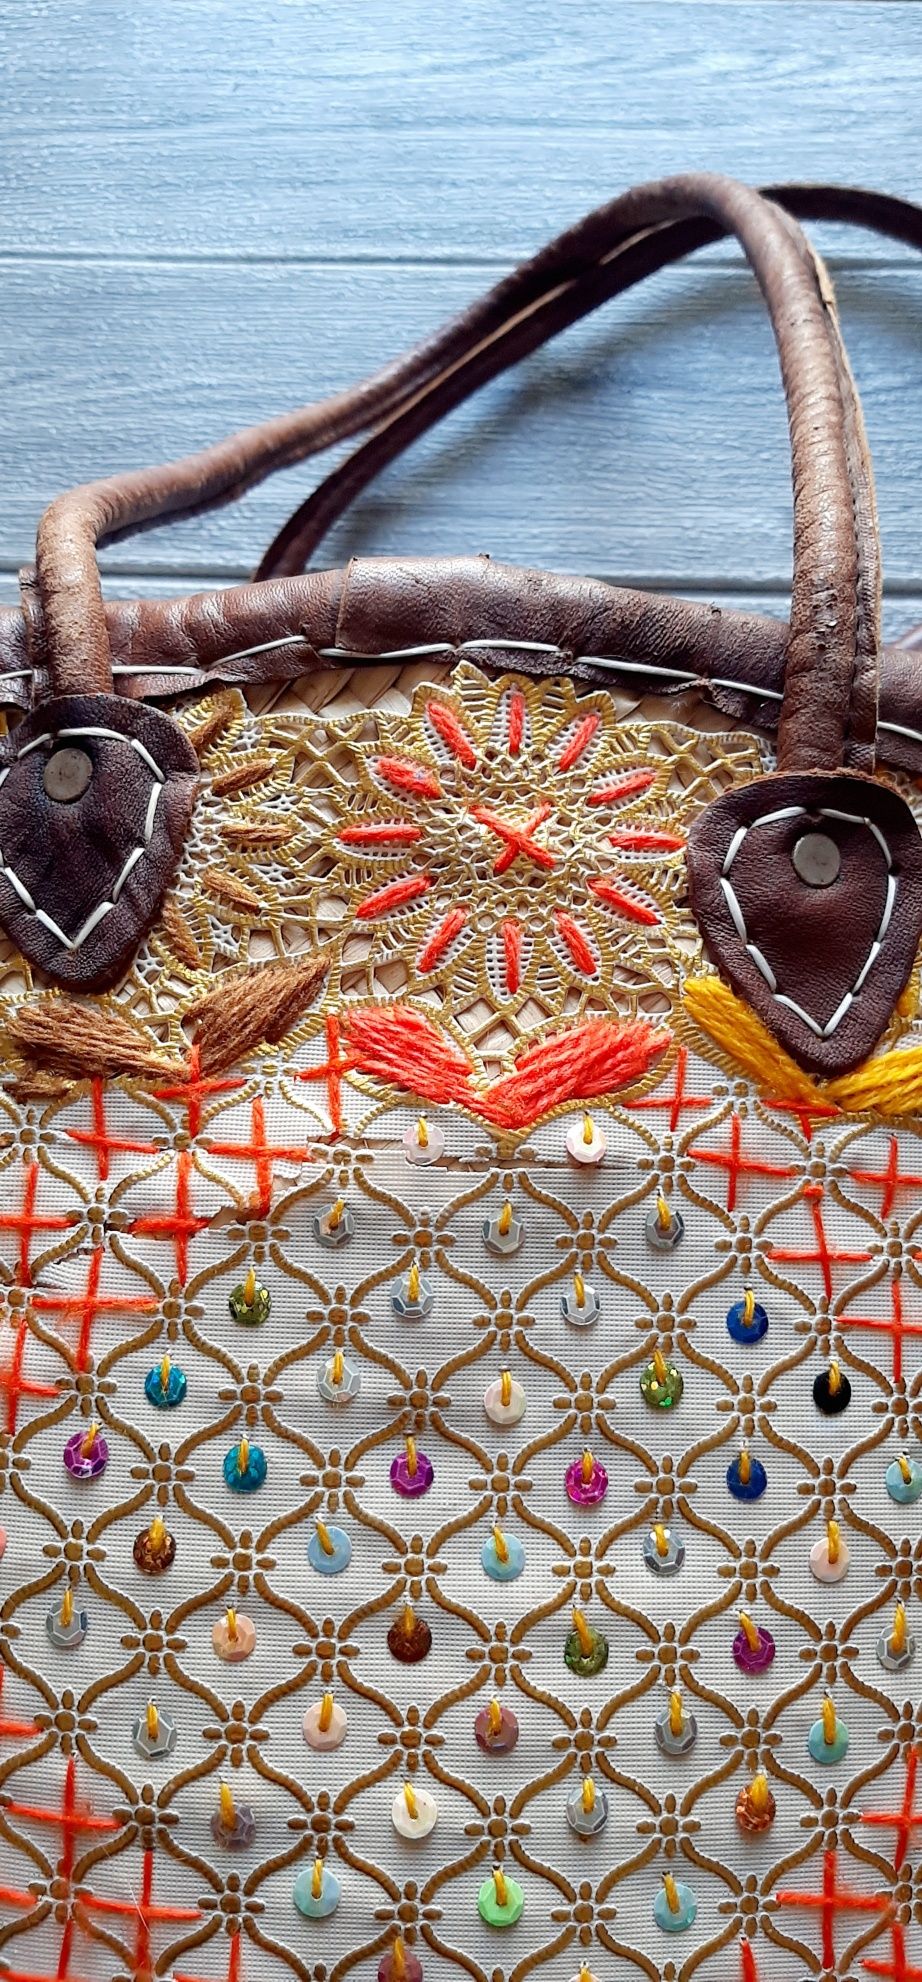 Torba pleciona tkana ręcznie etniczna koszyk hippie boho słomiany